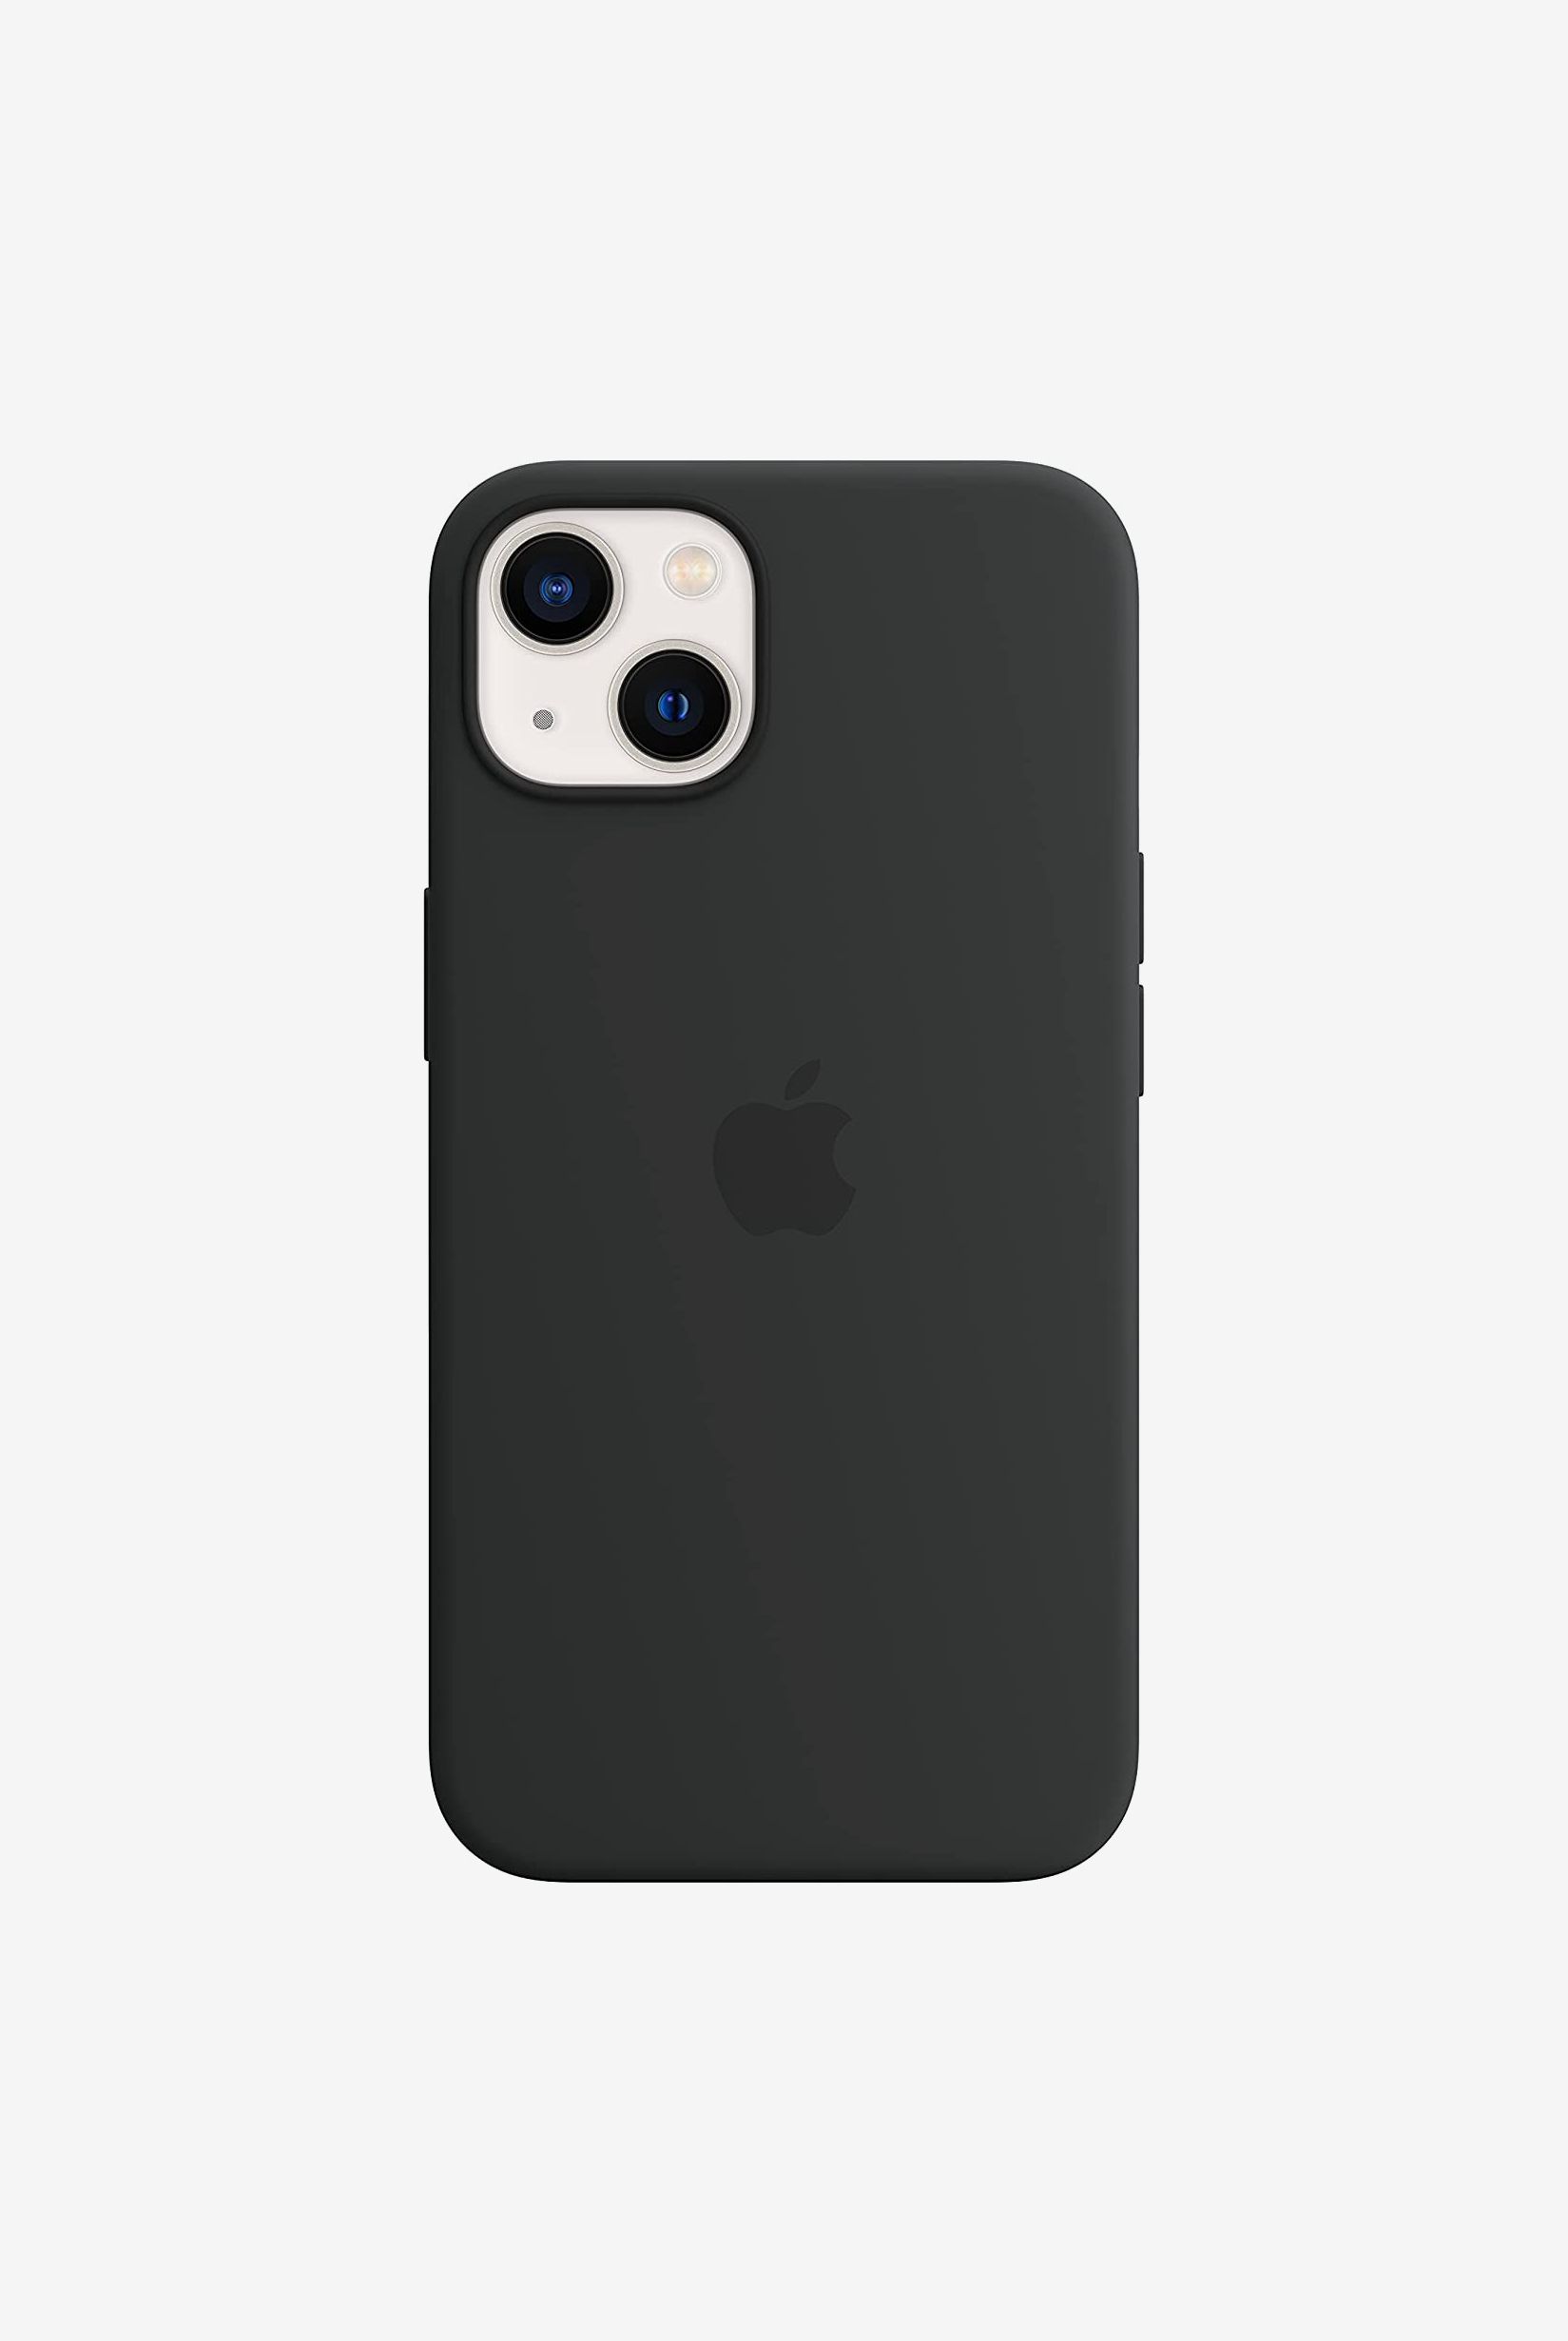 8 Best iPhone Cases 2021